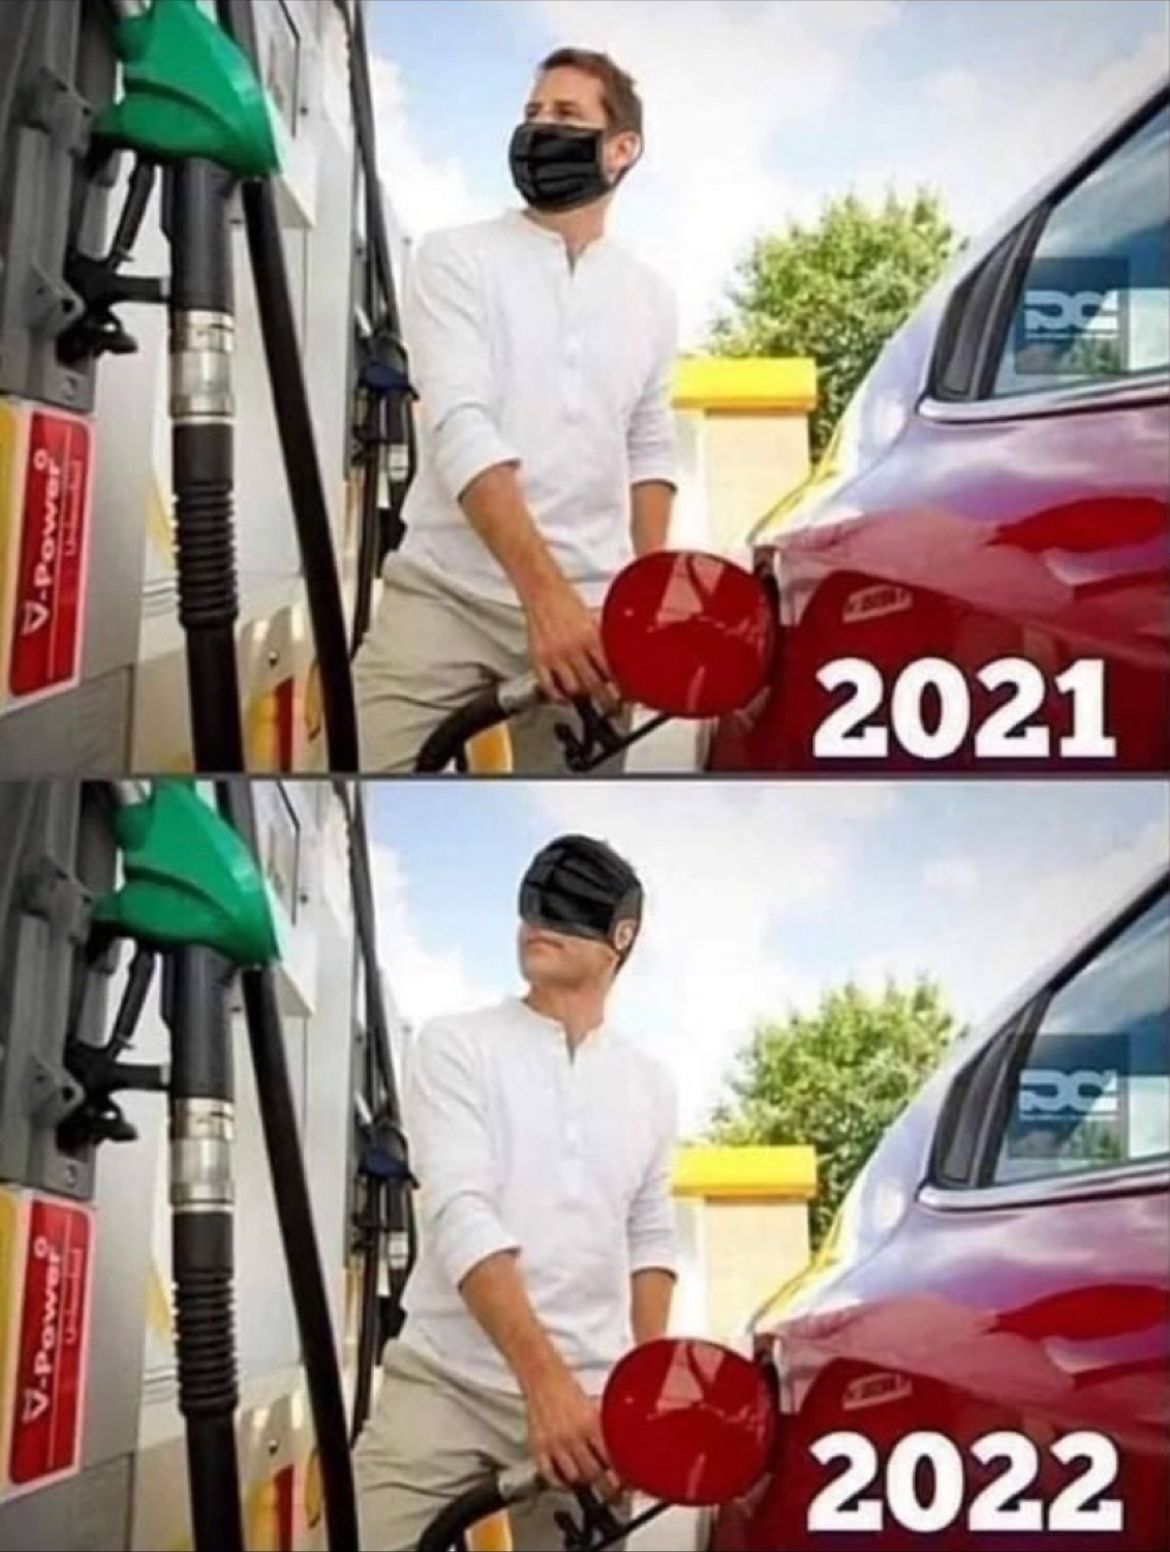 fuel prices 2021 vs 2022